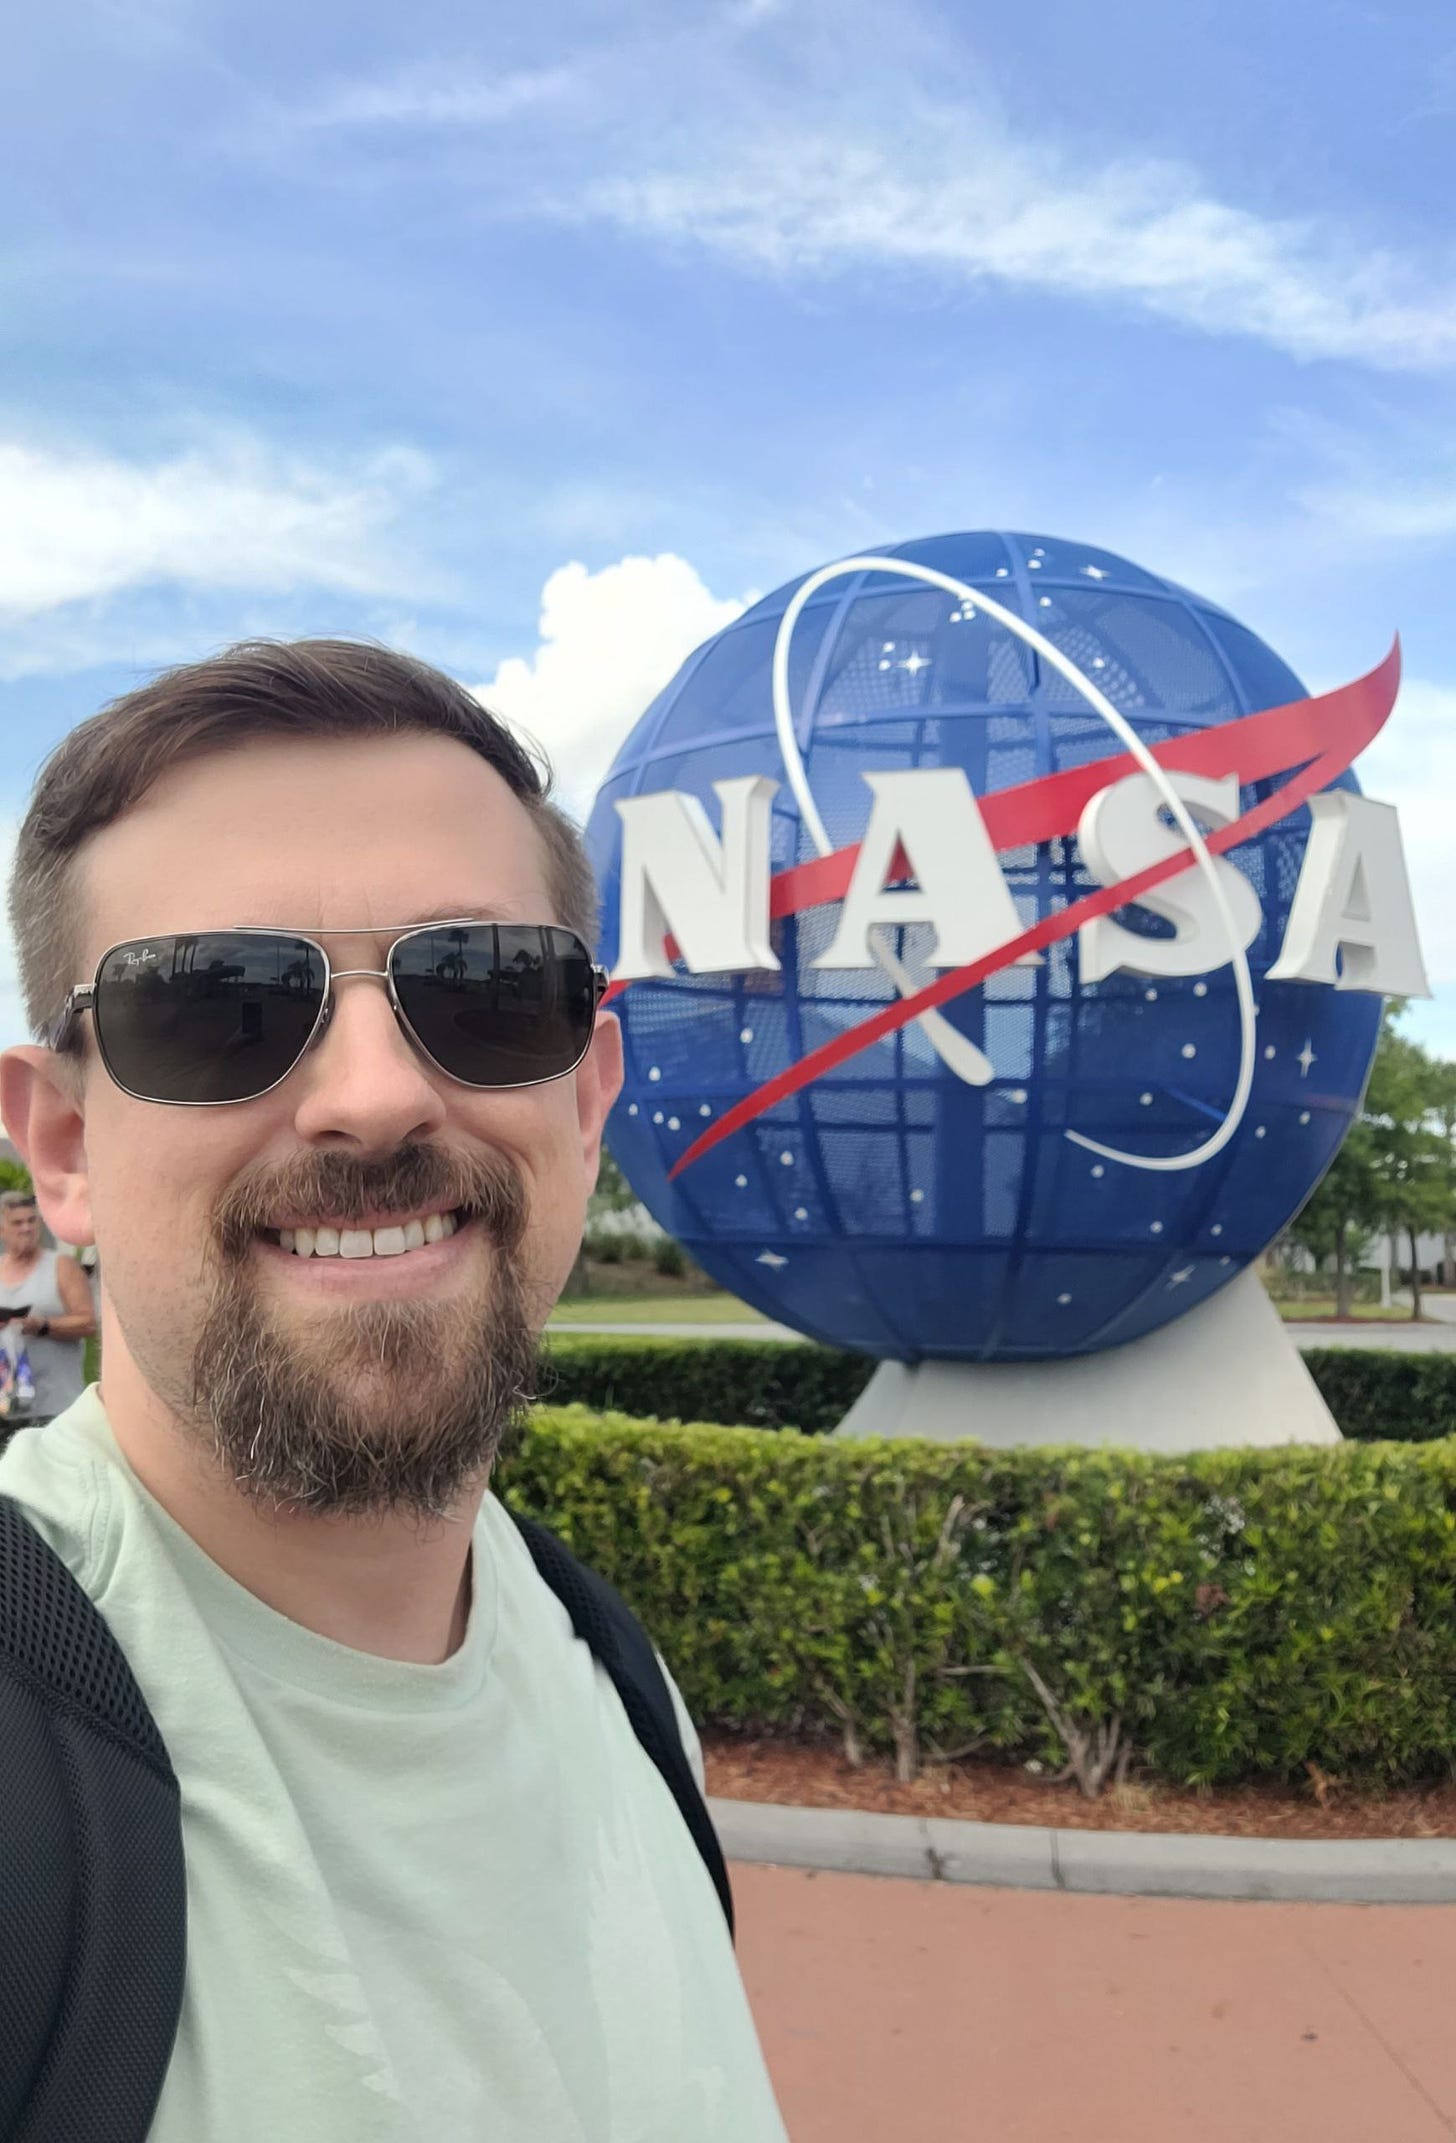 Eu, homem branco e loiro de cavanhaque, com óculos escuros, camiseta verde e alças de mochila, estou na frente do símbolo da NASA, um globo azul com o nome NASA em branco na frente e traços brancos e vermelhos. O dia está claro e dá pra ver o céu.